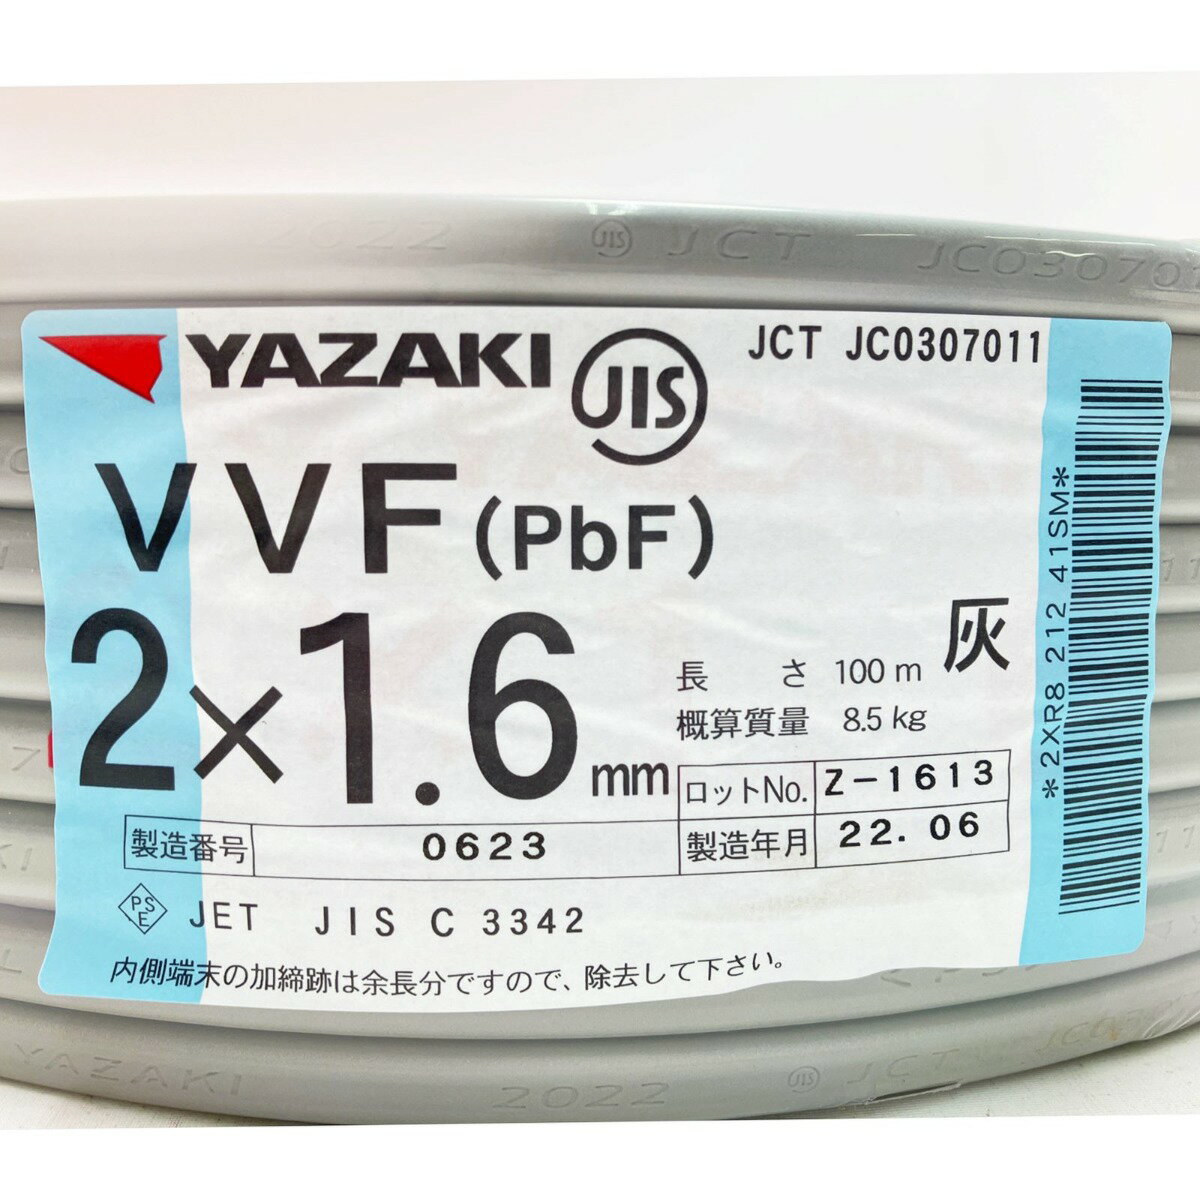 ▽▽【中古】YAZAKI VVFケーブル（PbF） 2×1.6mm 100m 灰 Sランク